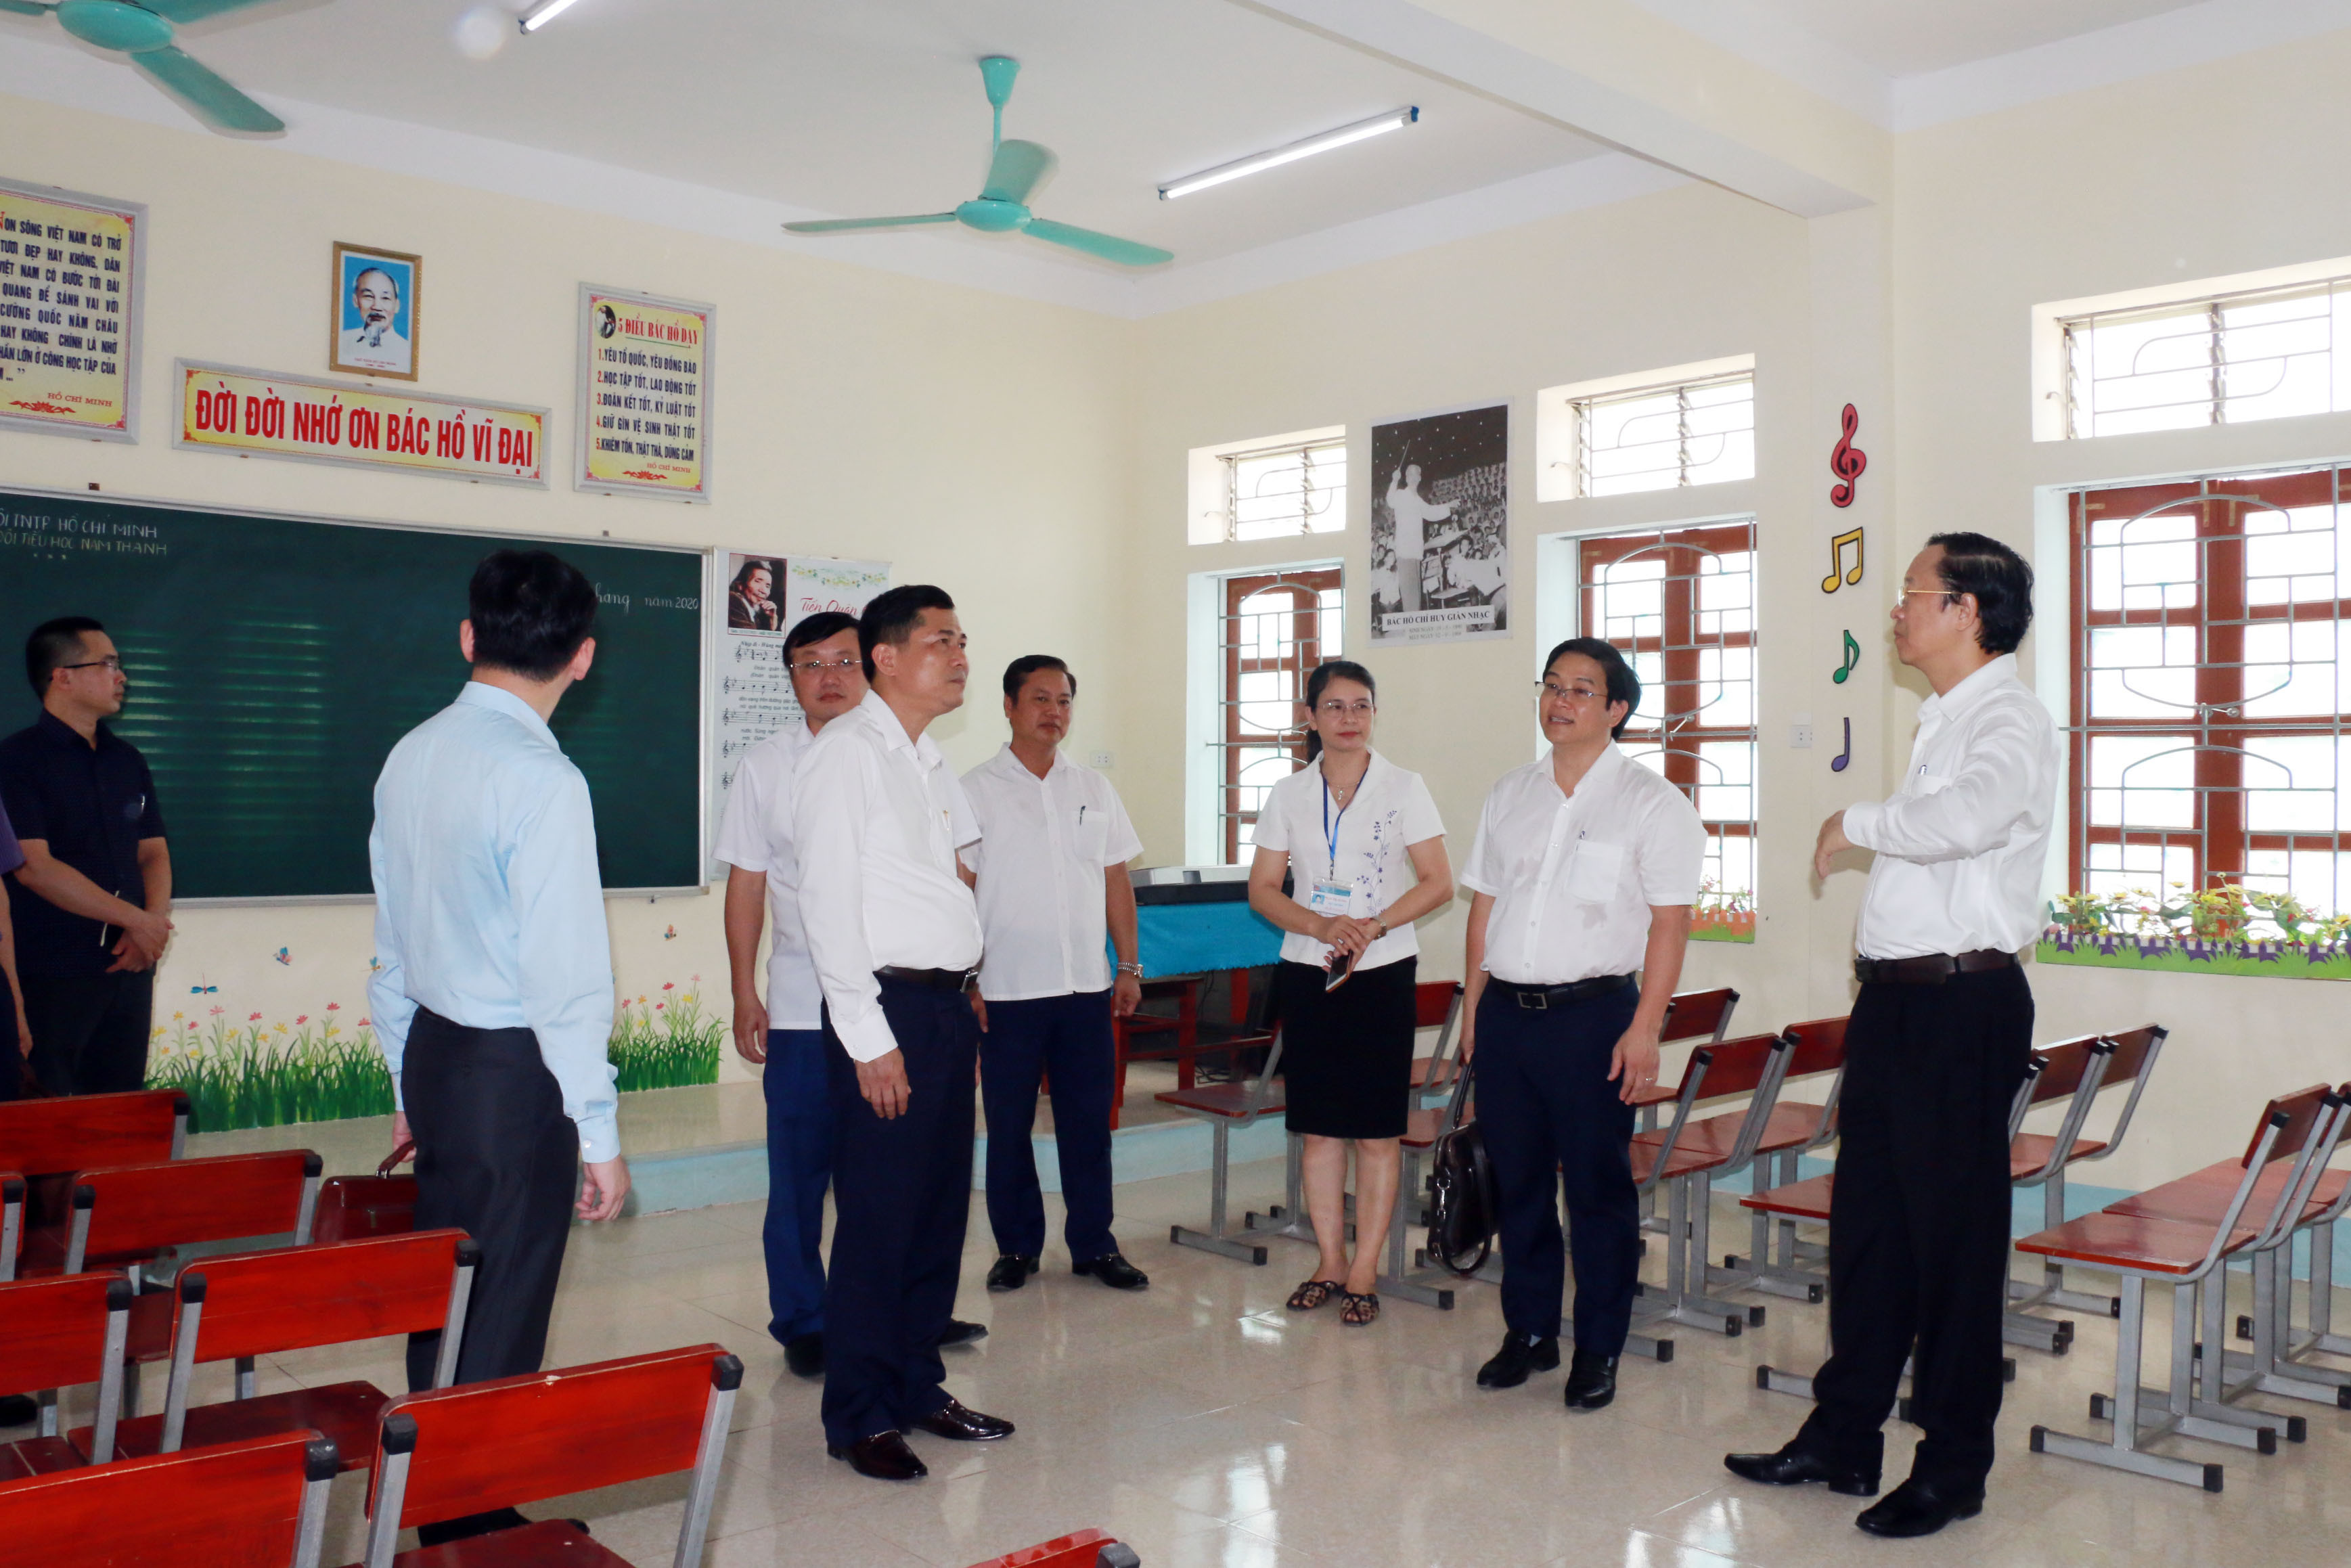 Đoàn công tác của Bộ Giáo dục và Đào tạo kiểm tra các phòng dạy chức năng tại trường Tiểu học Nam Thanh - Nam Đàn. Ảnh: Mỹ Hà